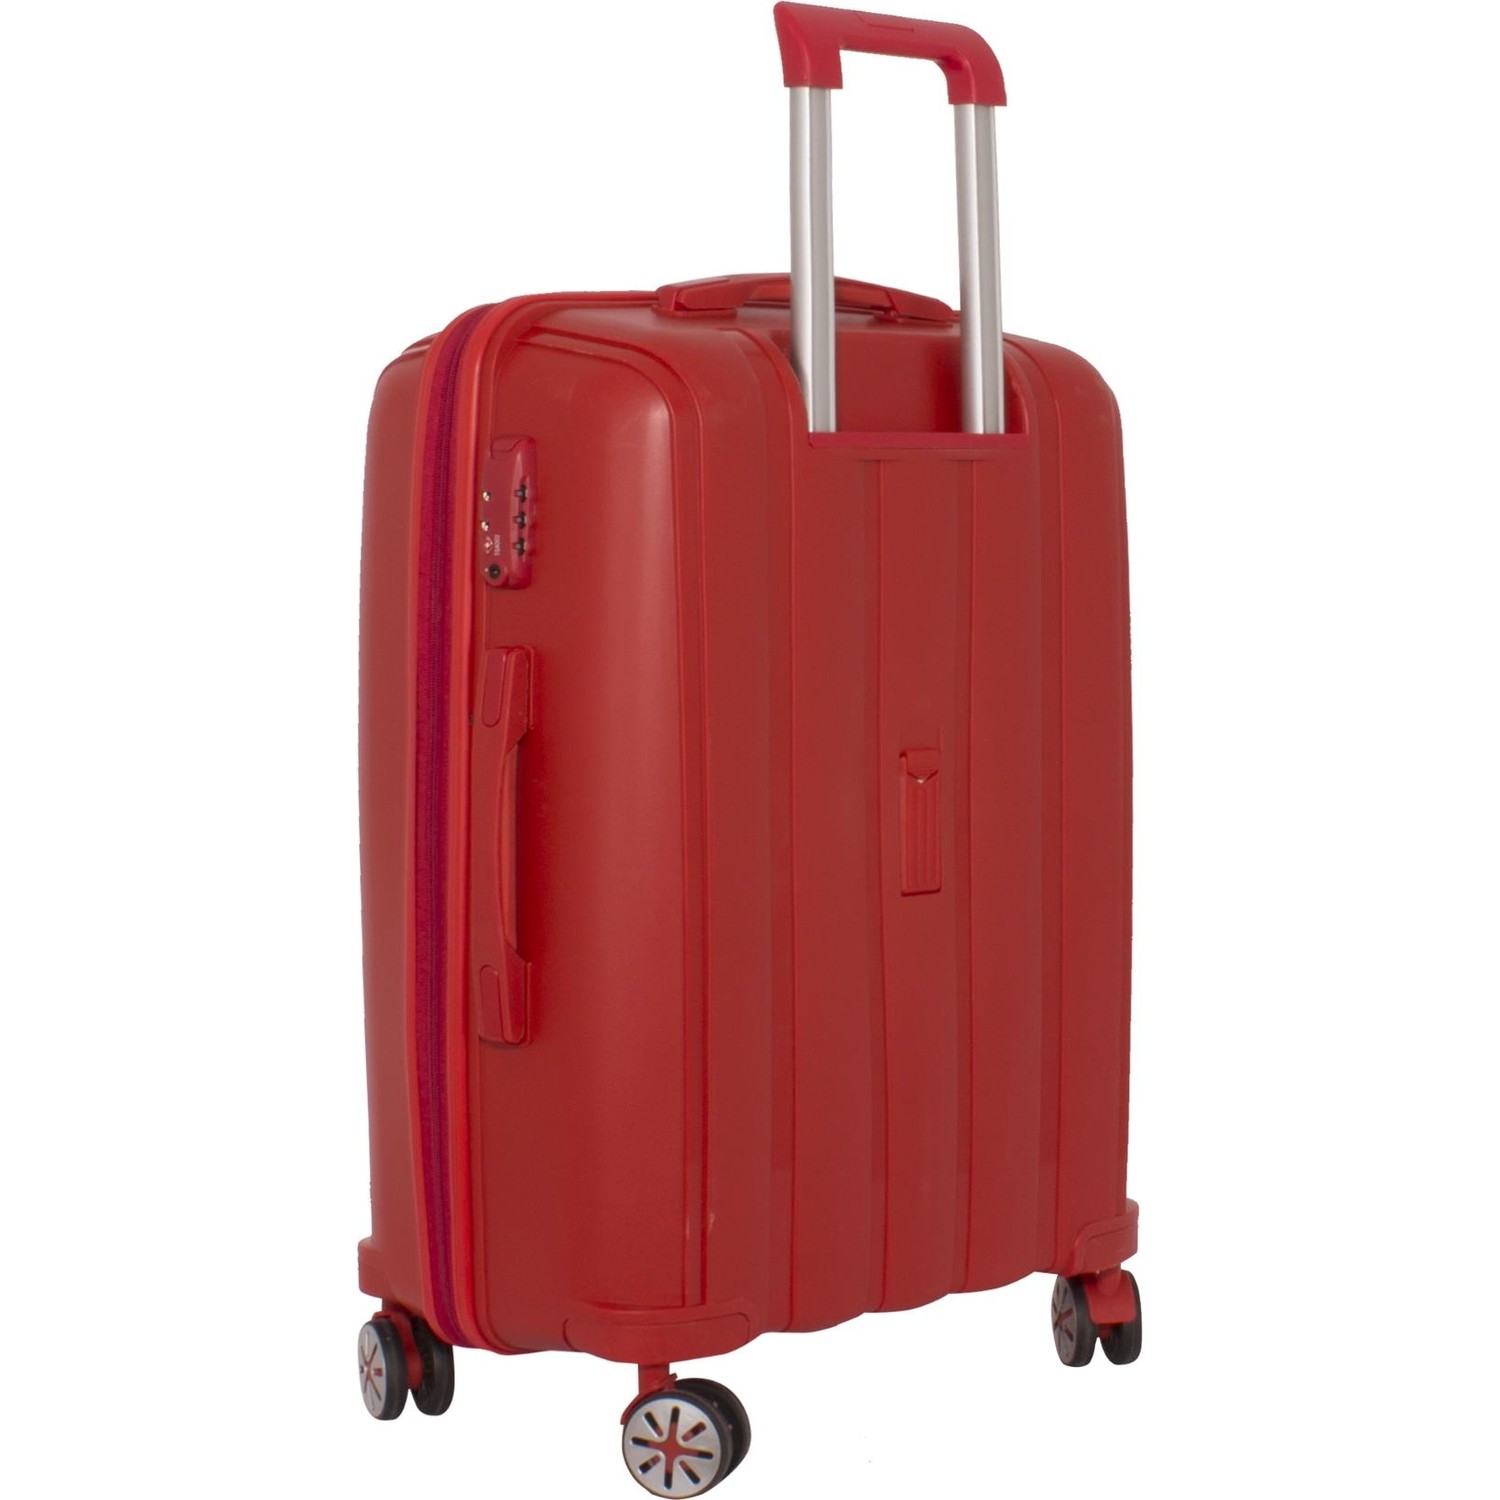 Большой чемодан из полипропилена MCS V305 L RED! Для 23 кг! - 4